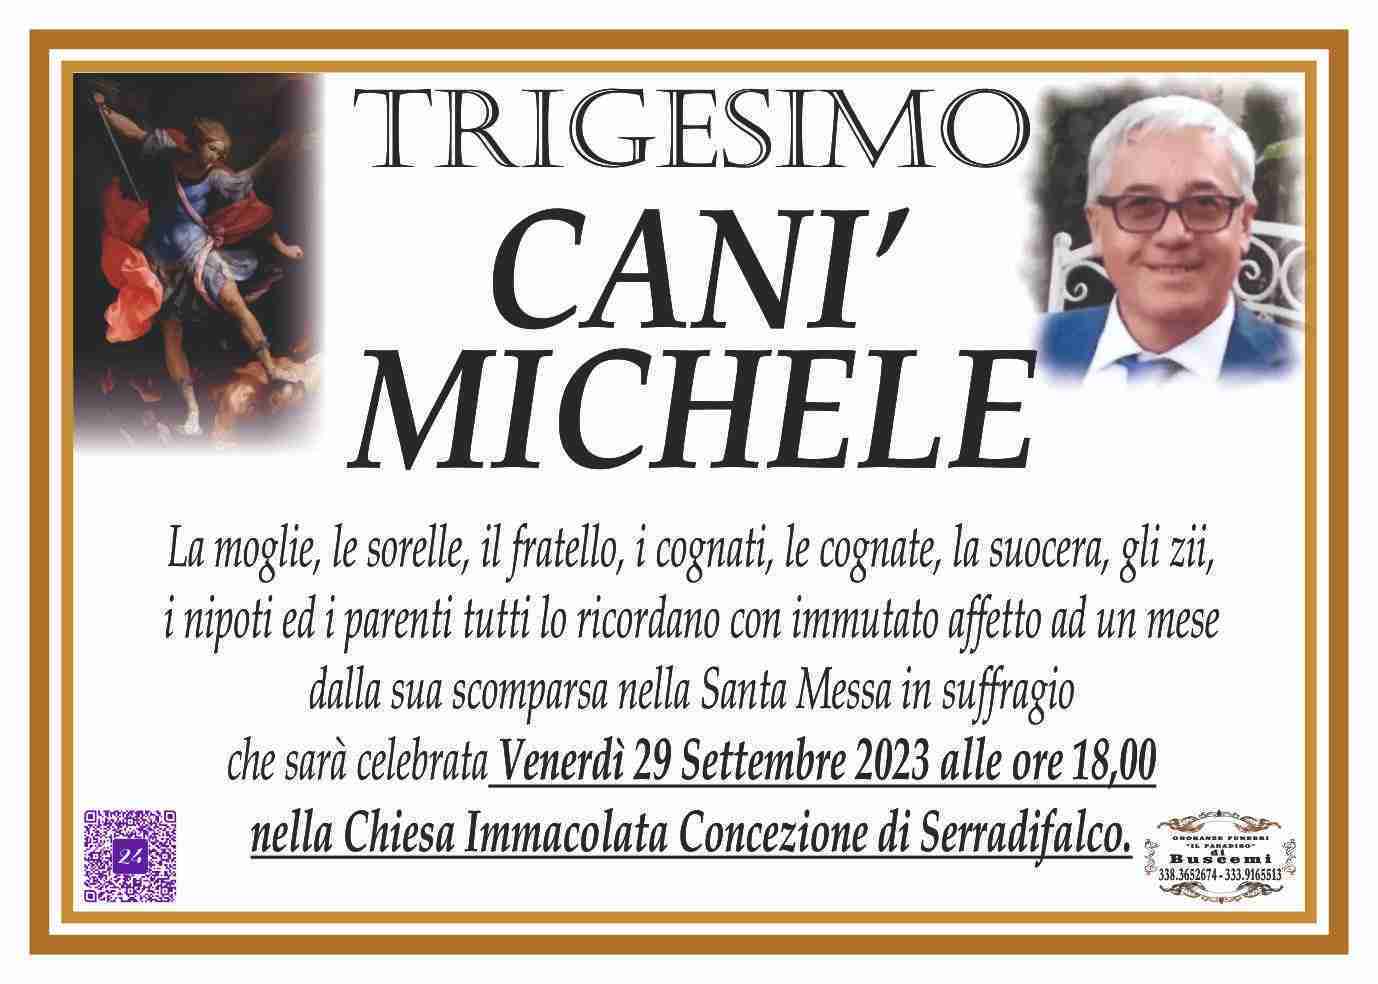 Michele Canì